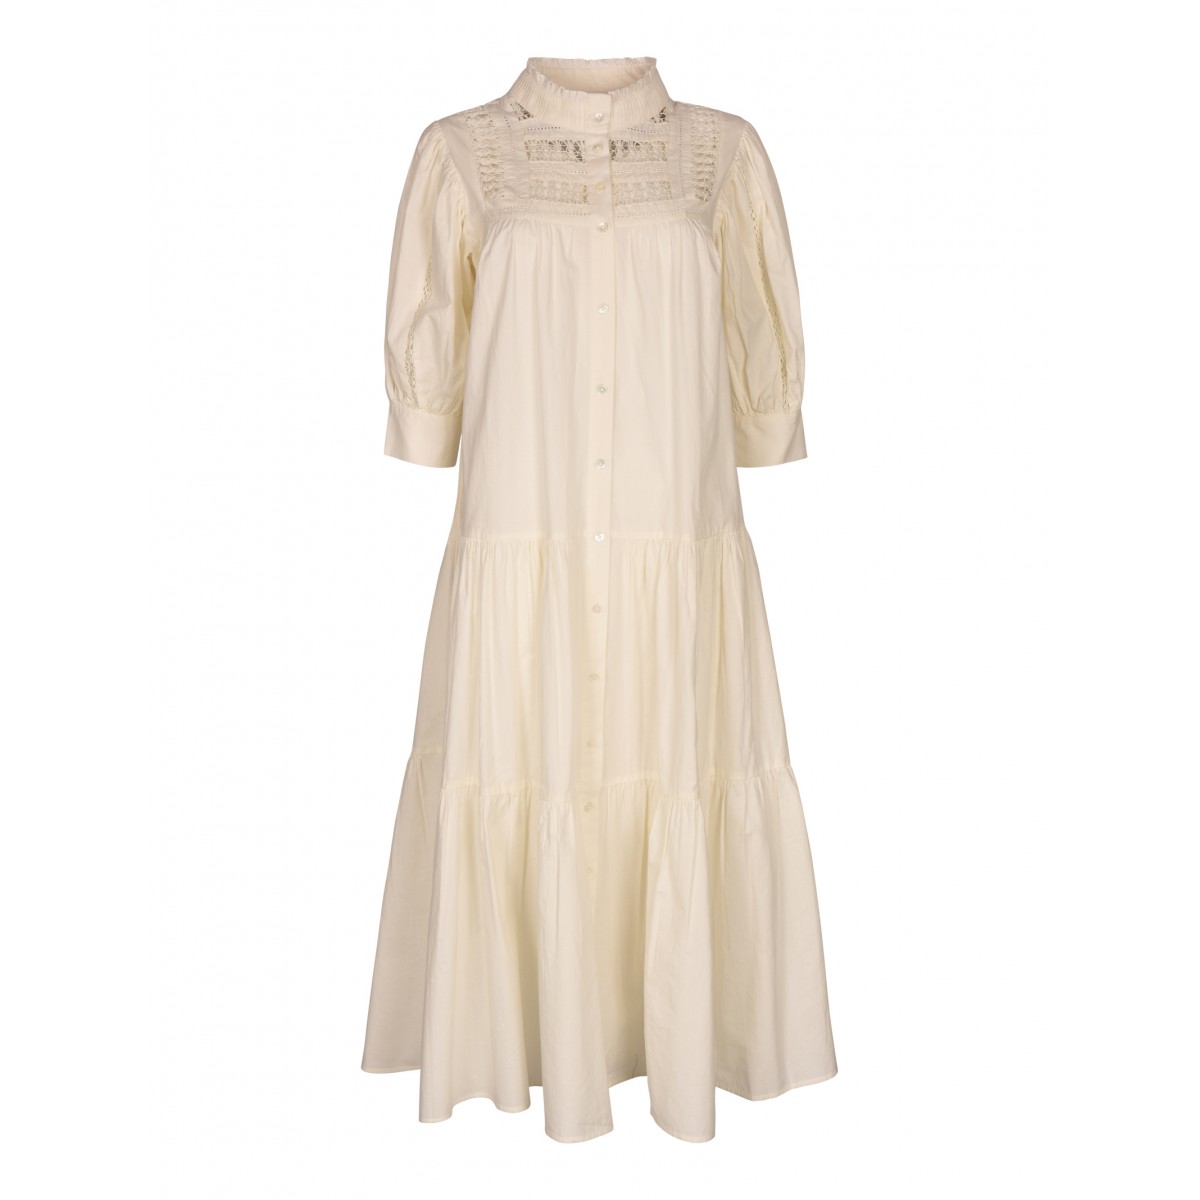 Cream Lace Trimmed Cotton Dress